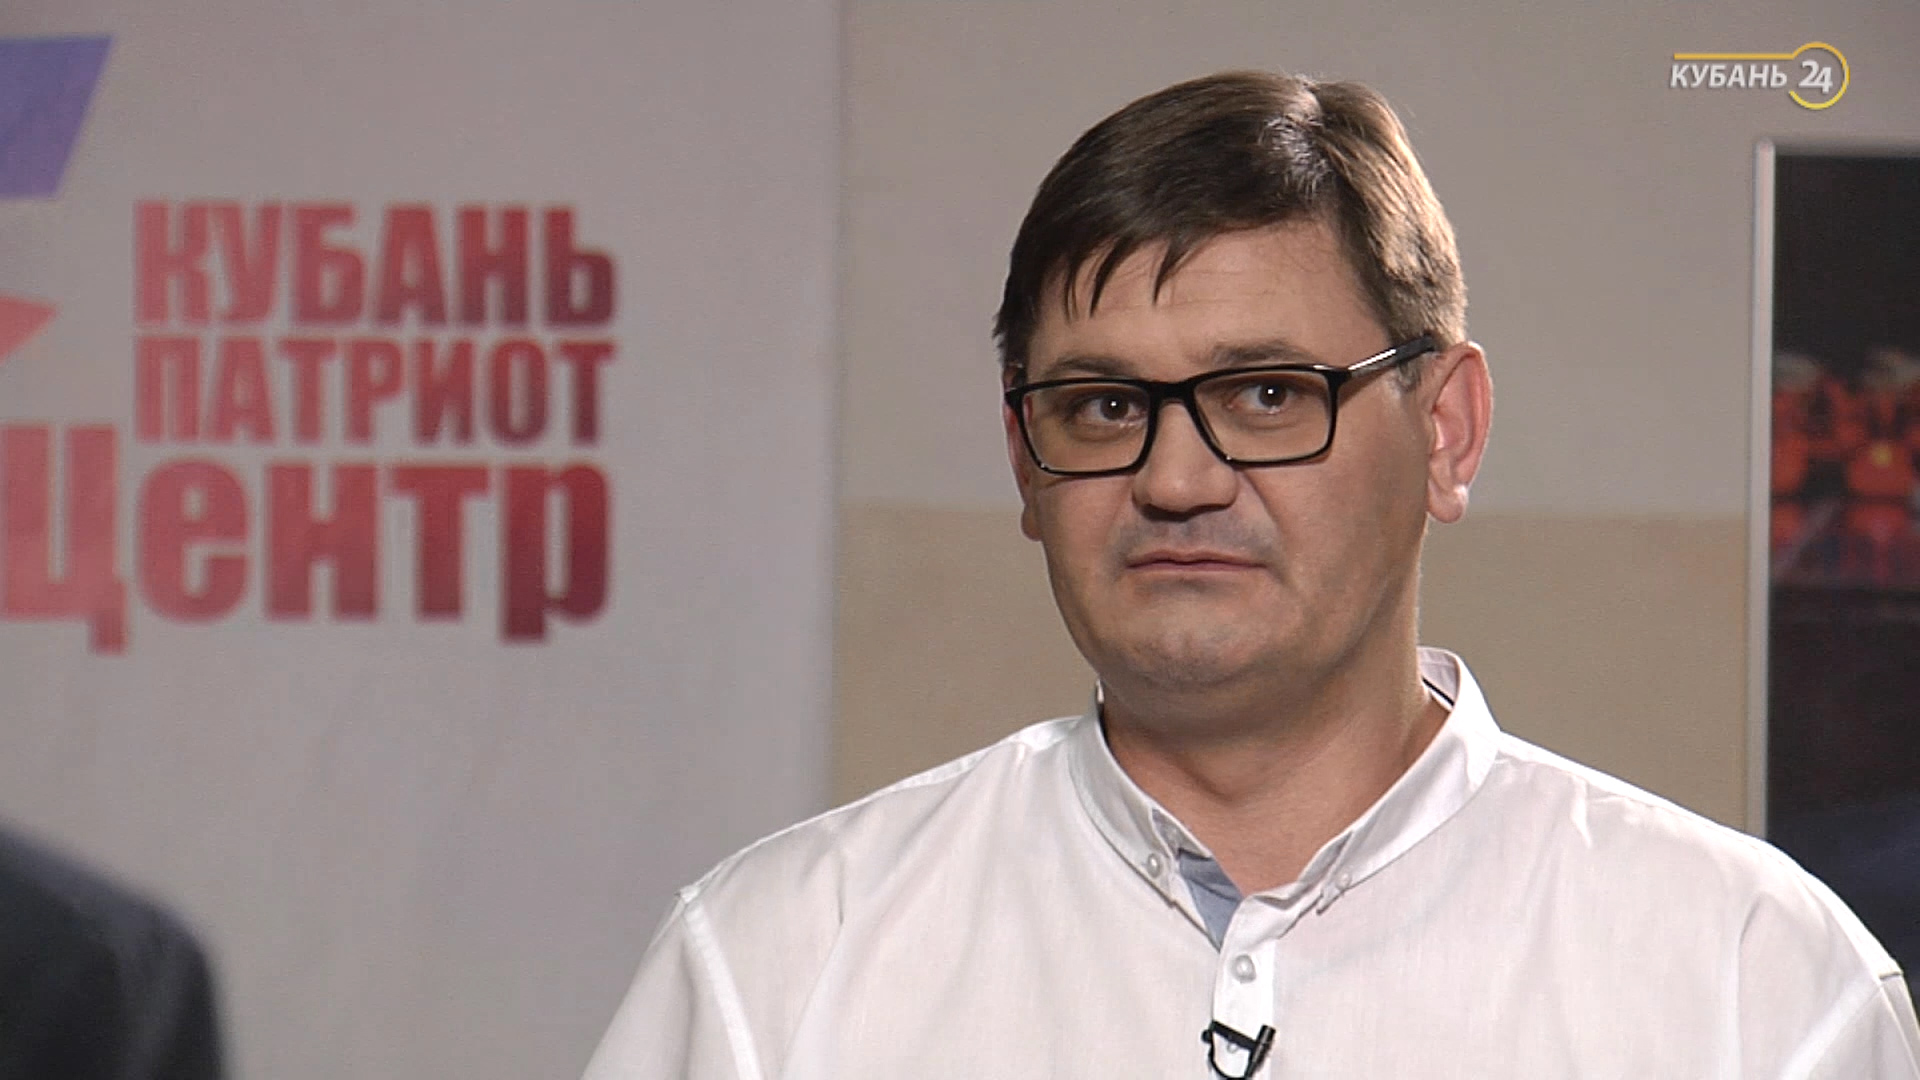 Интервью с руководителем «Кубаньпатриотцентра» Игорем Калининым